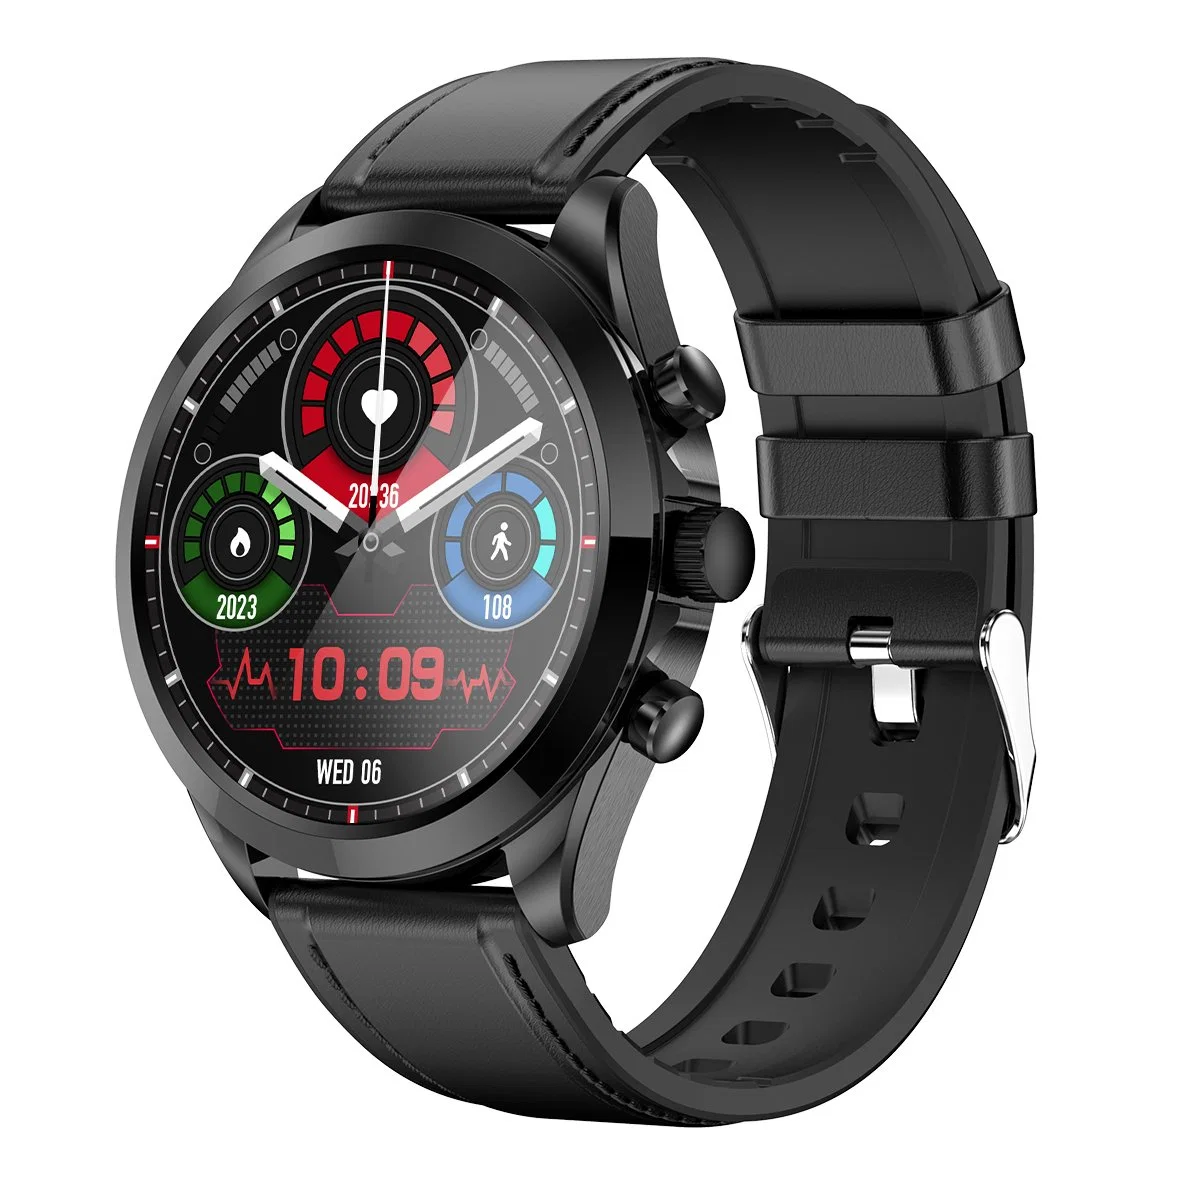 ET440 Bluetooth اتصال Smart Watch ECG HRV الهيكل درجة حرارة الجهاز مراقبة الصوت مساعد الصوت لياقة الهيكل، حزام الجلد - أسود